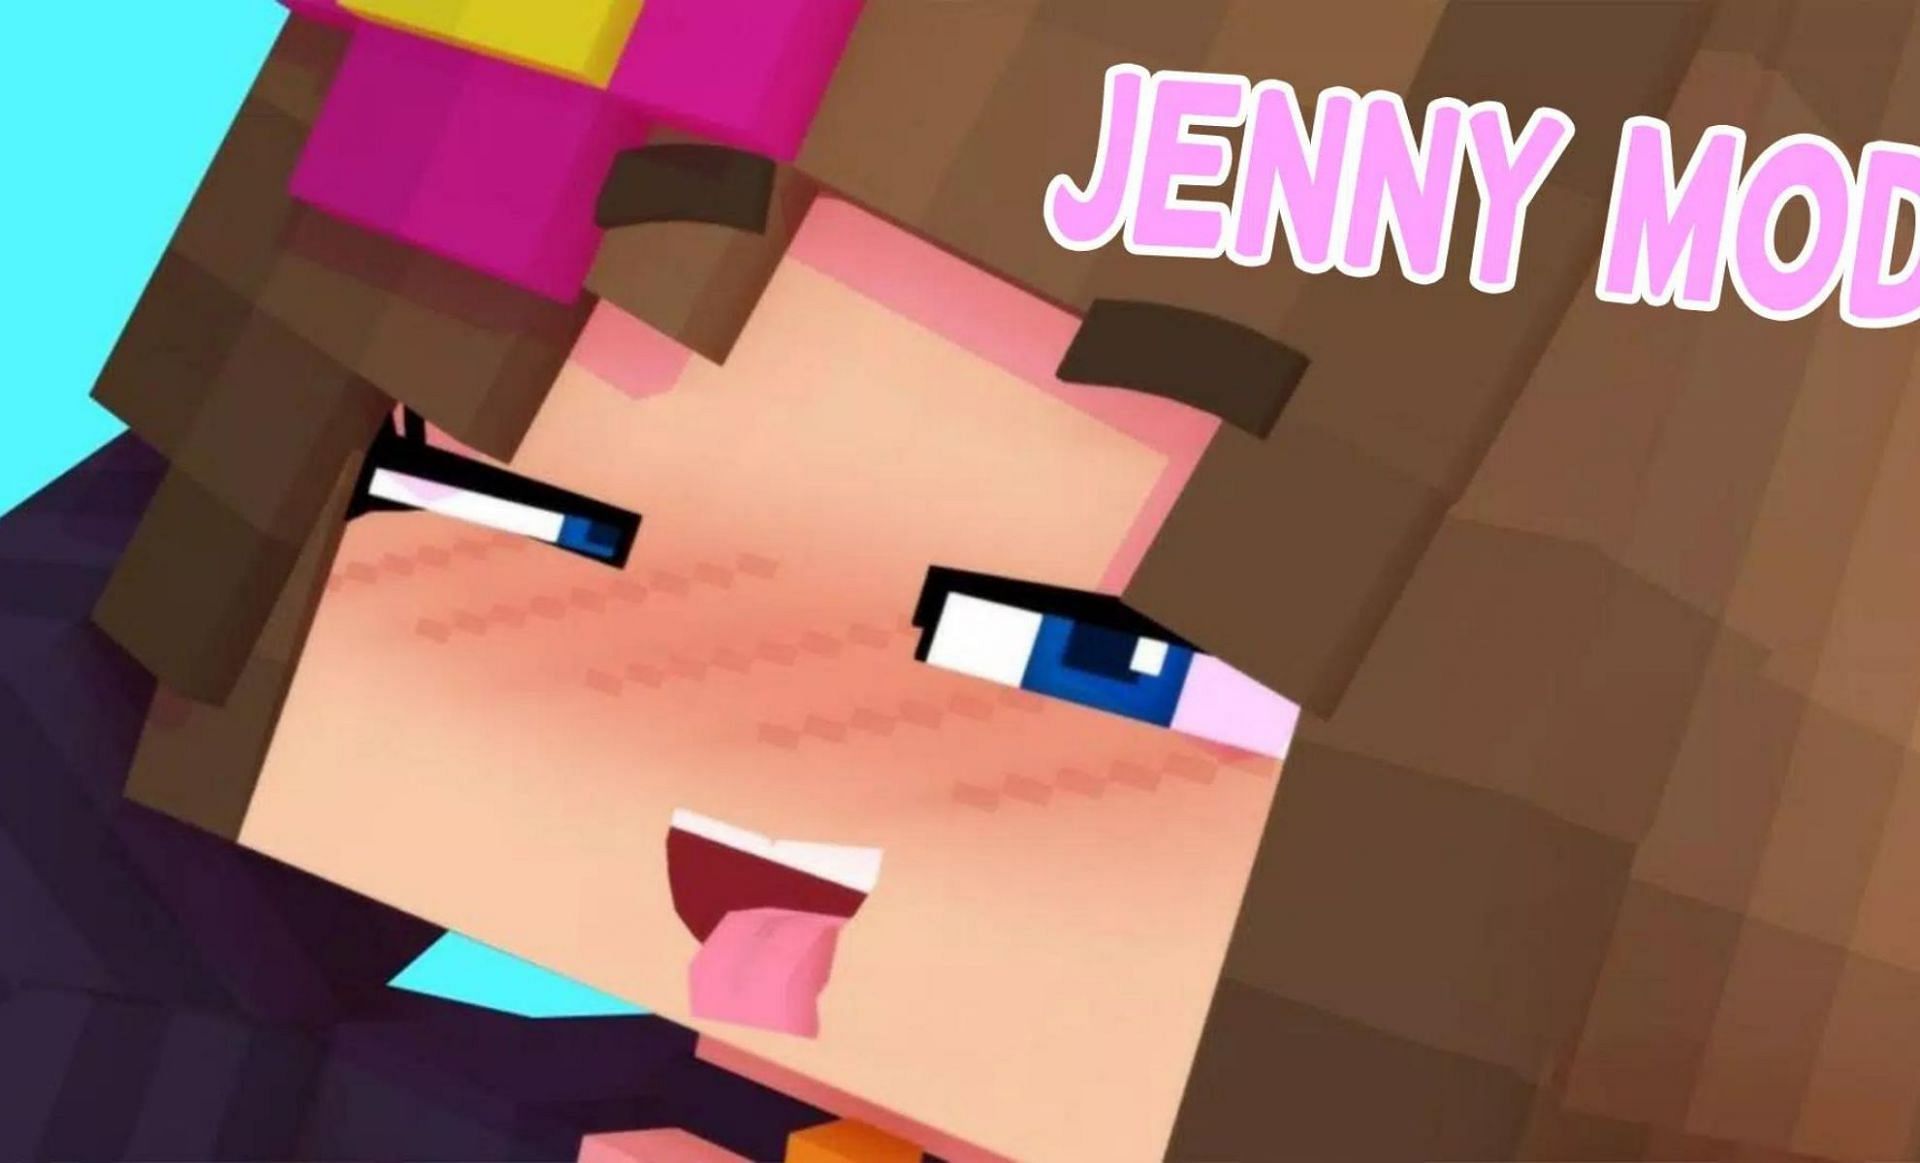 Download jenny mod Jenny mod